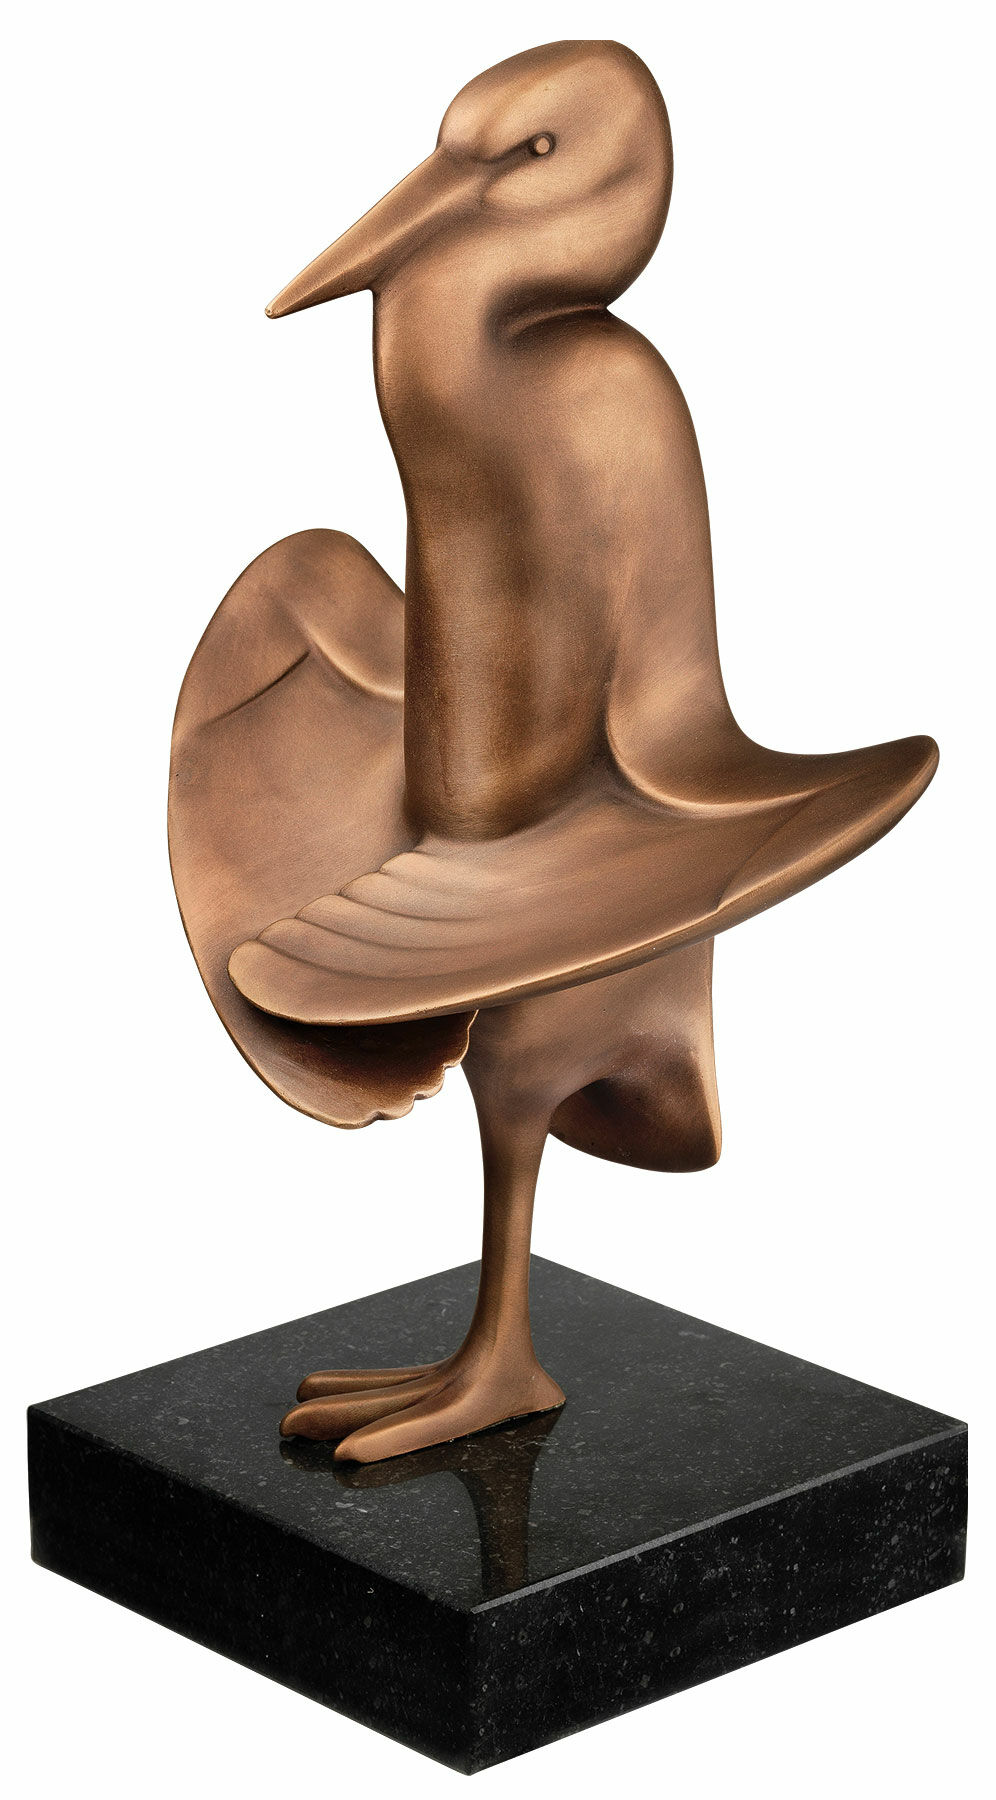 Sculpture "Heron in the Sun", bronze by Evert den Hartog